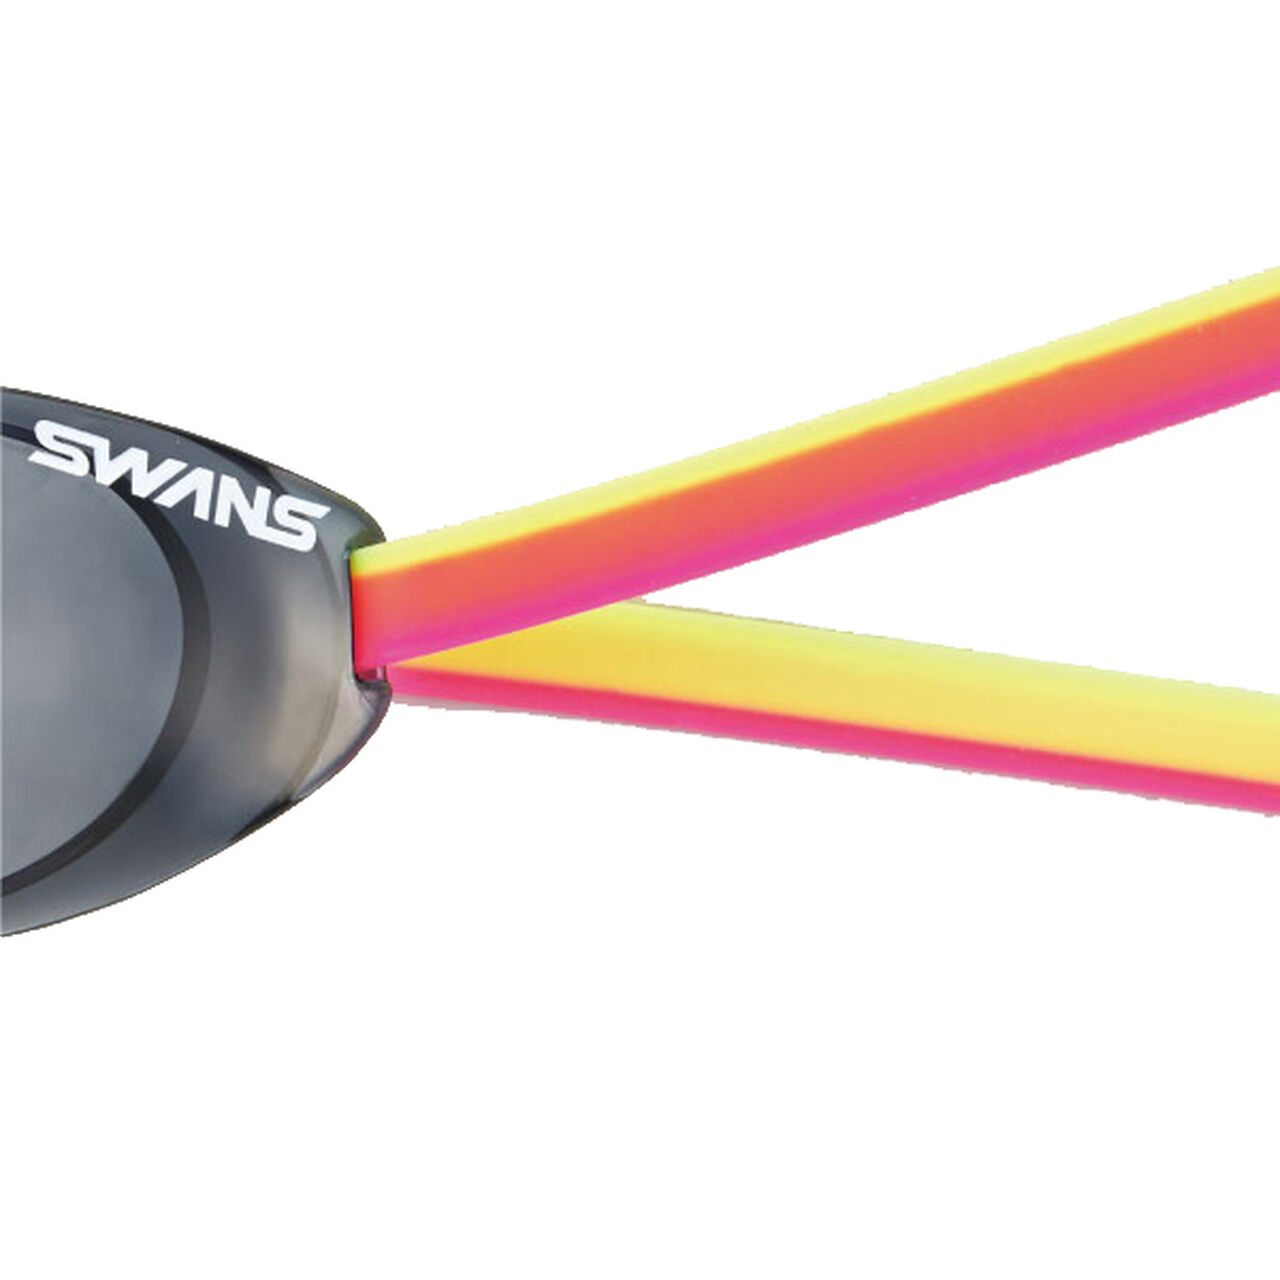 SWANS (速安视) SRB-40 PI/Y 粉色/黄色 游泳镜备用带,Opt5, large image number 1